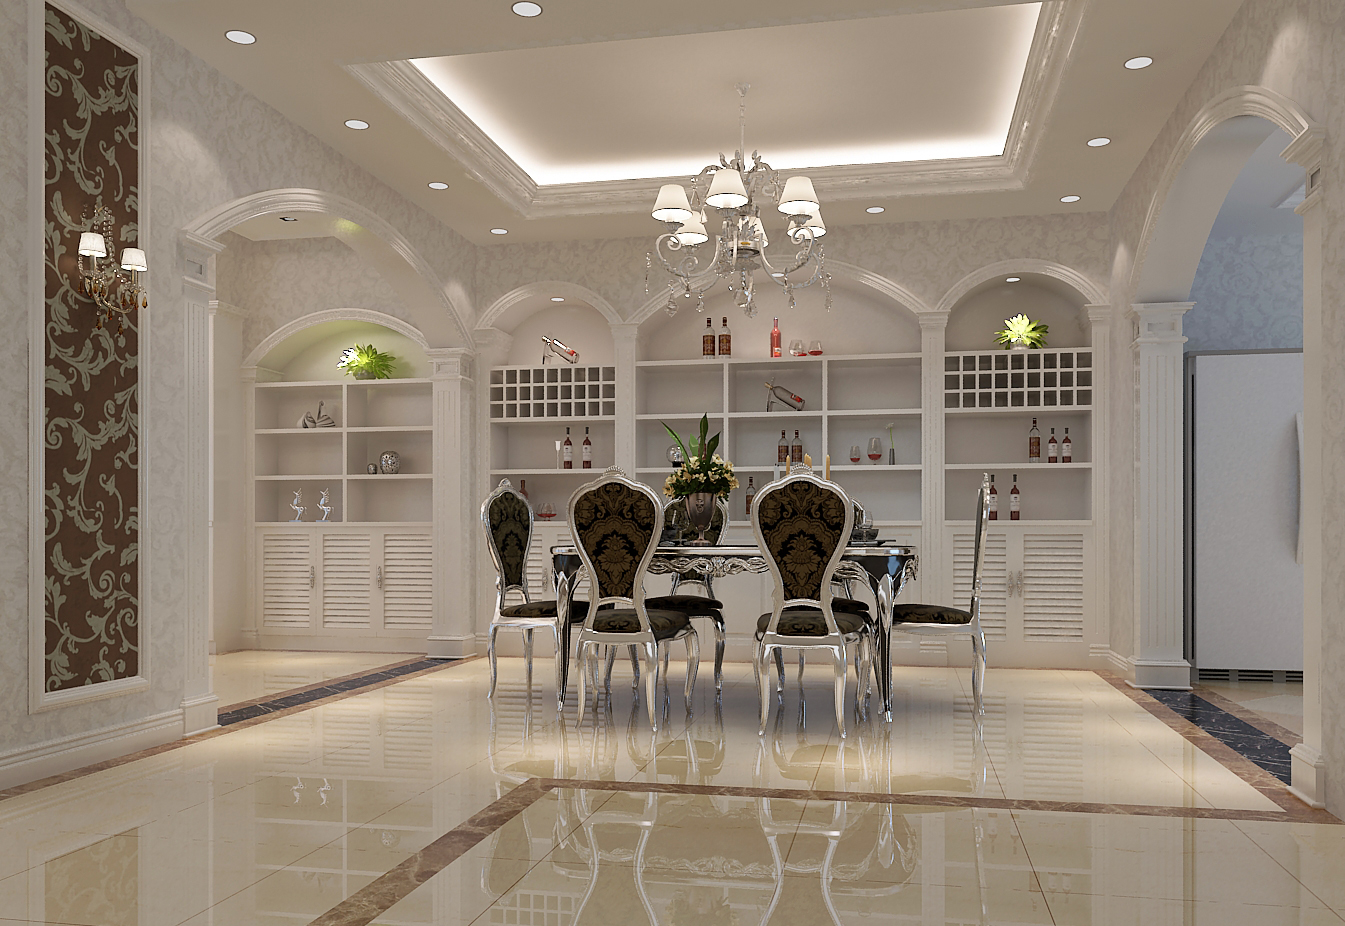 别墅 欧式 混搭 小资 高规格 独栋 古典 优雅 精致 餐厅图片来自重庆高度国际装饰工程有限公司在富河园-欧式的分享